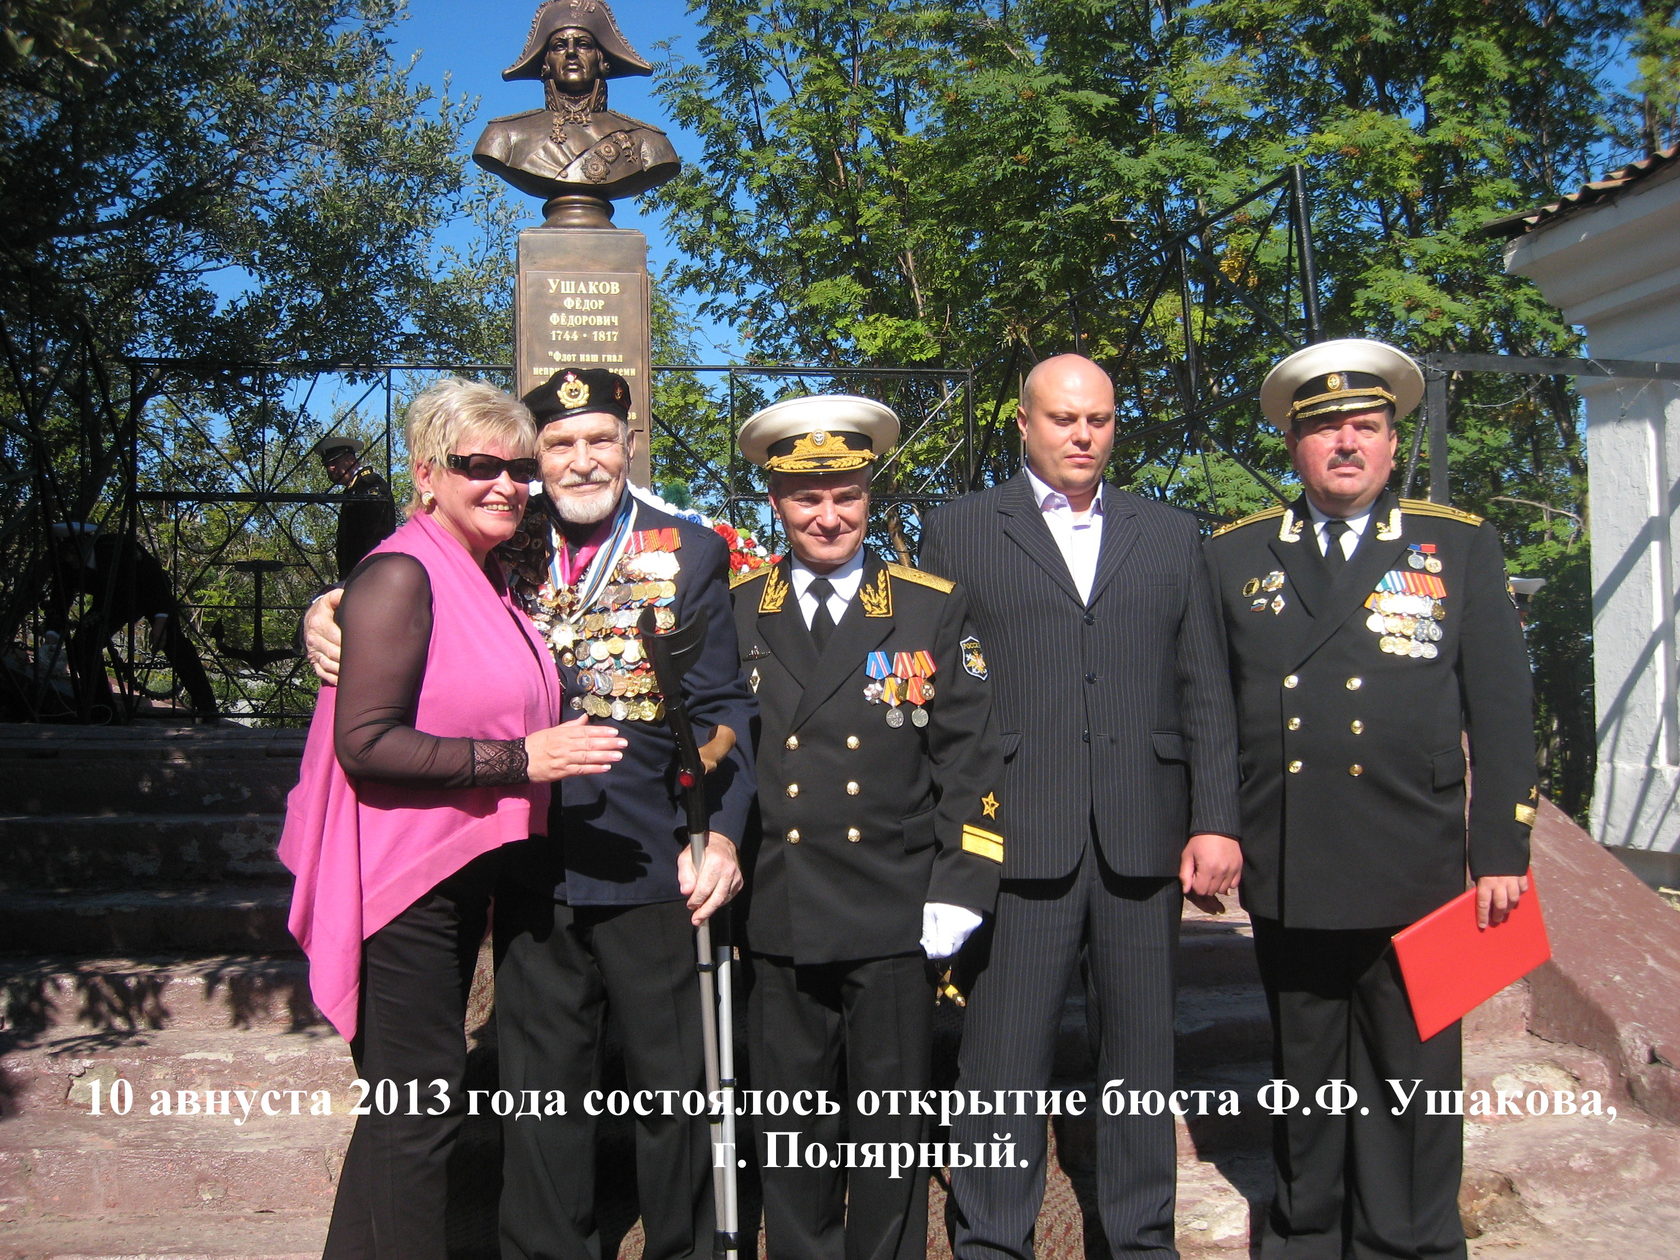 Открытие памятника Ф. Ф. Ушакову, г. Полярный